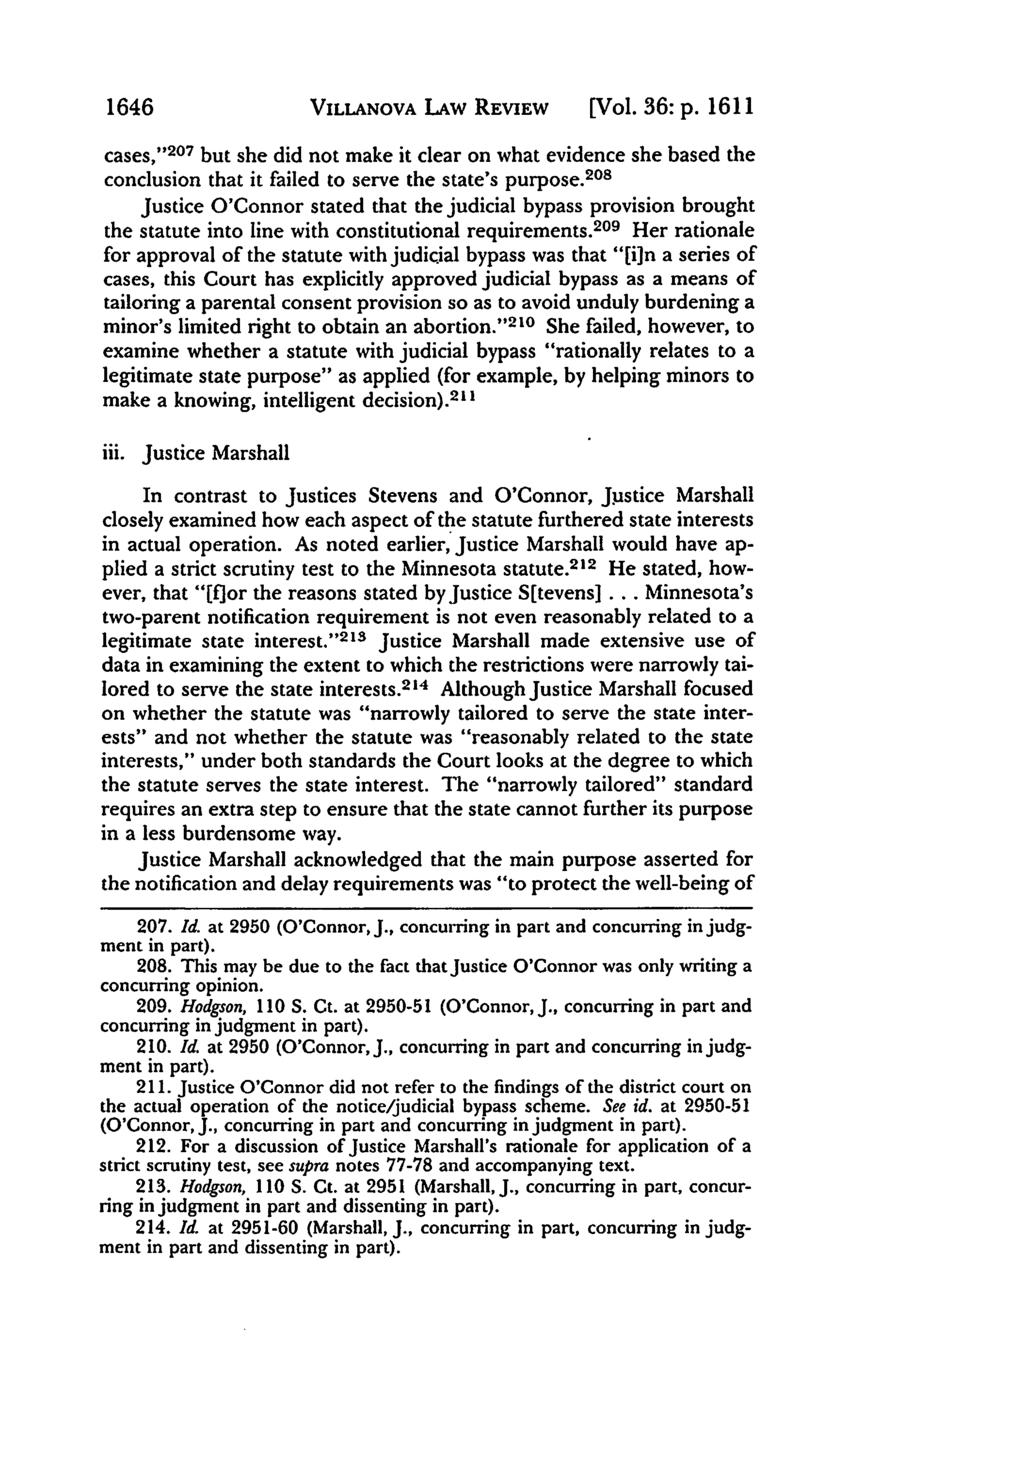 Villanova Law Review, Vol. 36, Iss. 6 [1991], Art. 6 1646 VILLANOVA LAW REVIEW [Vol. 36: p.